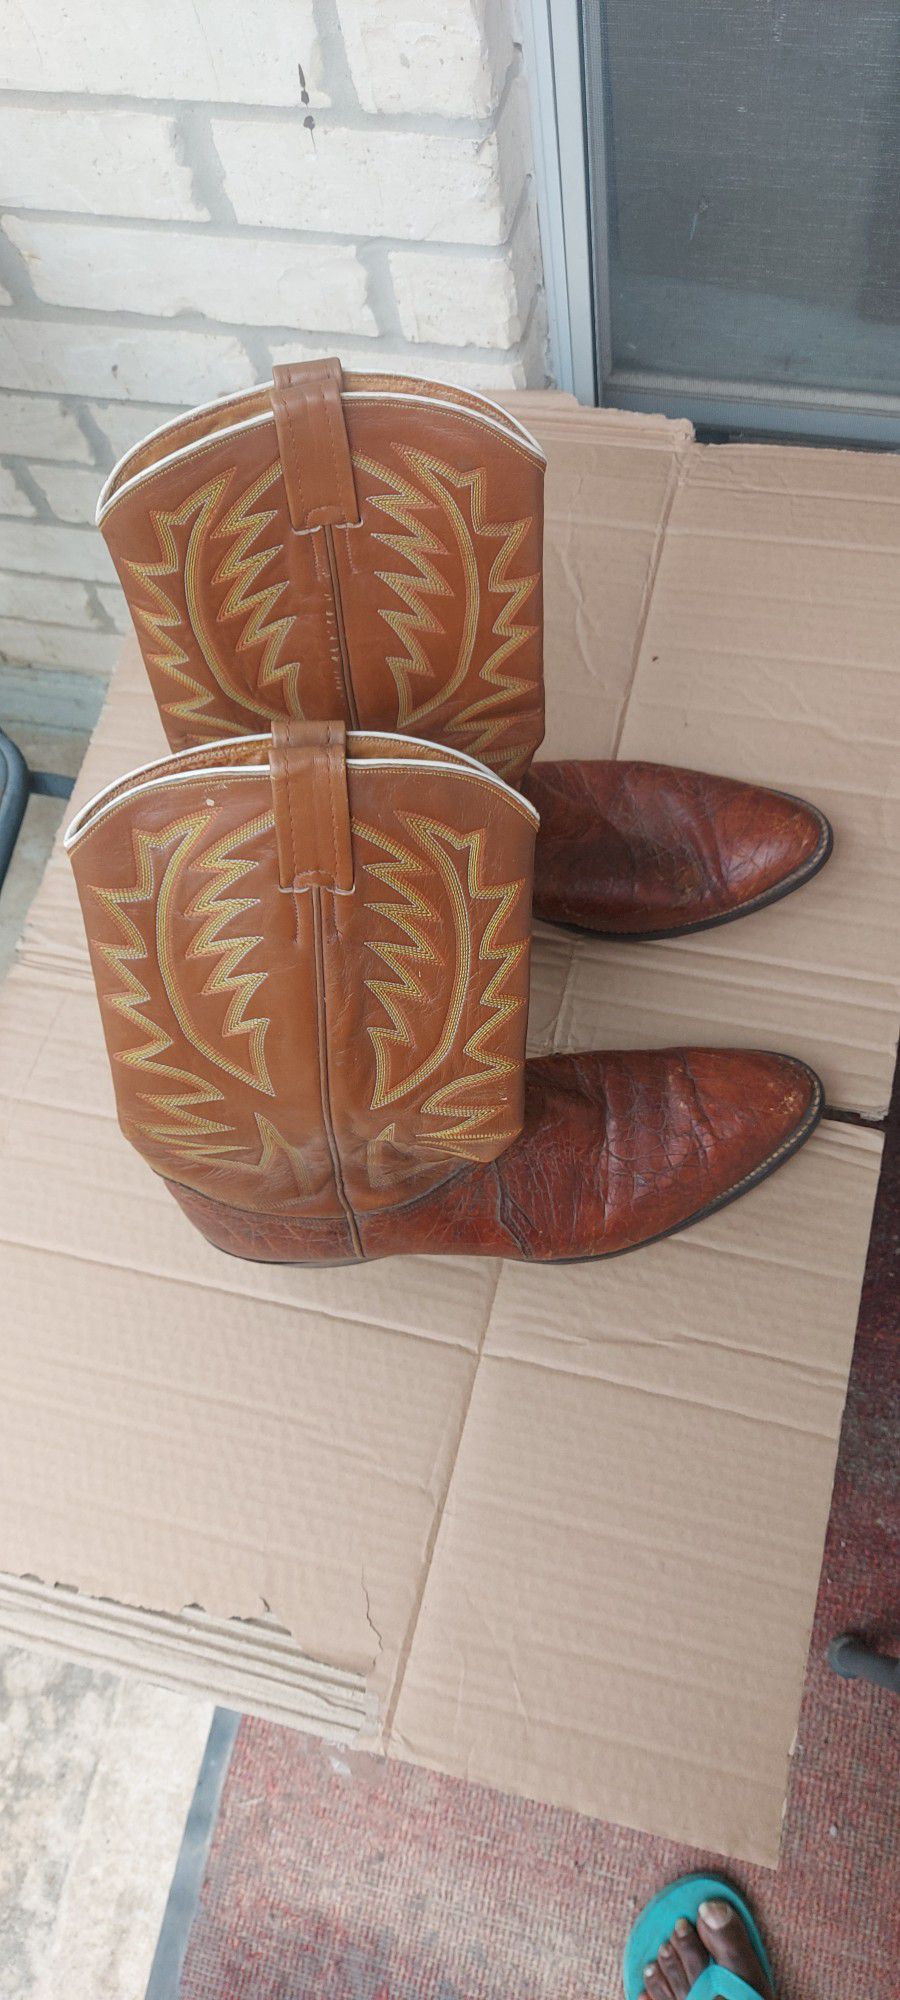 Nocona 7171 Men's Cowboy Boots Size 13B